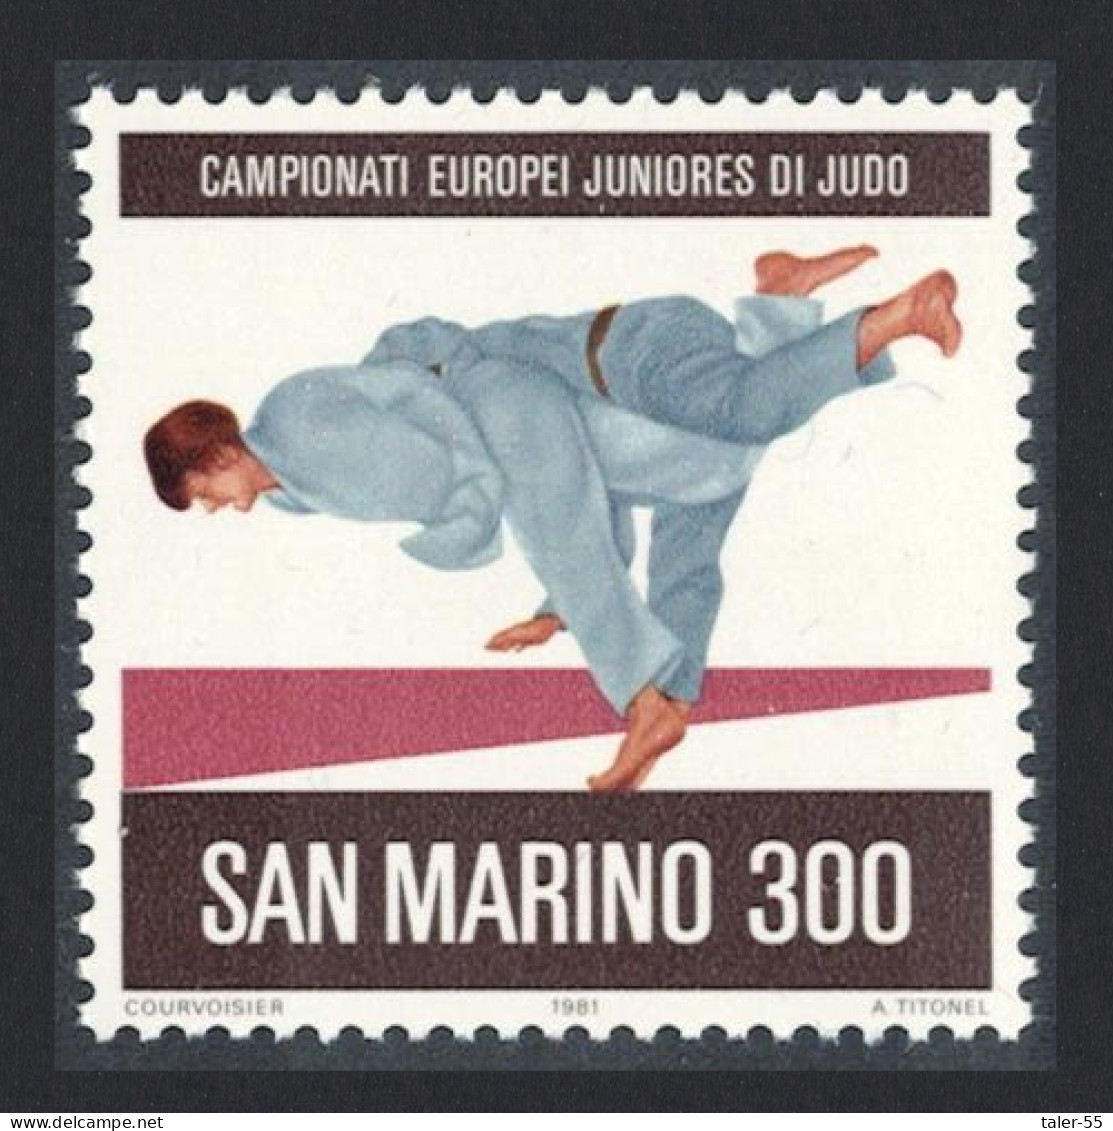 San Marino European Junior Judo Championships San Marino 1981 MNH SG#1170 - Nuovi